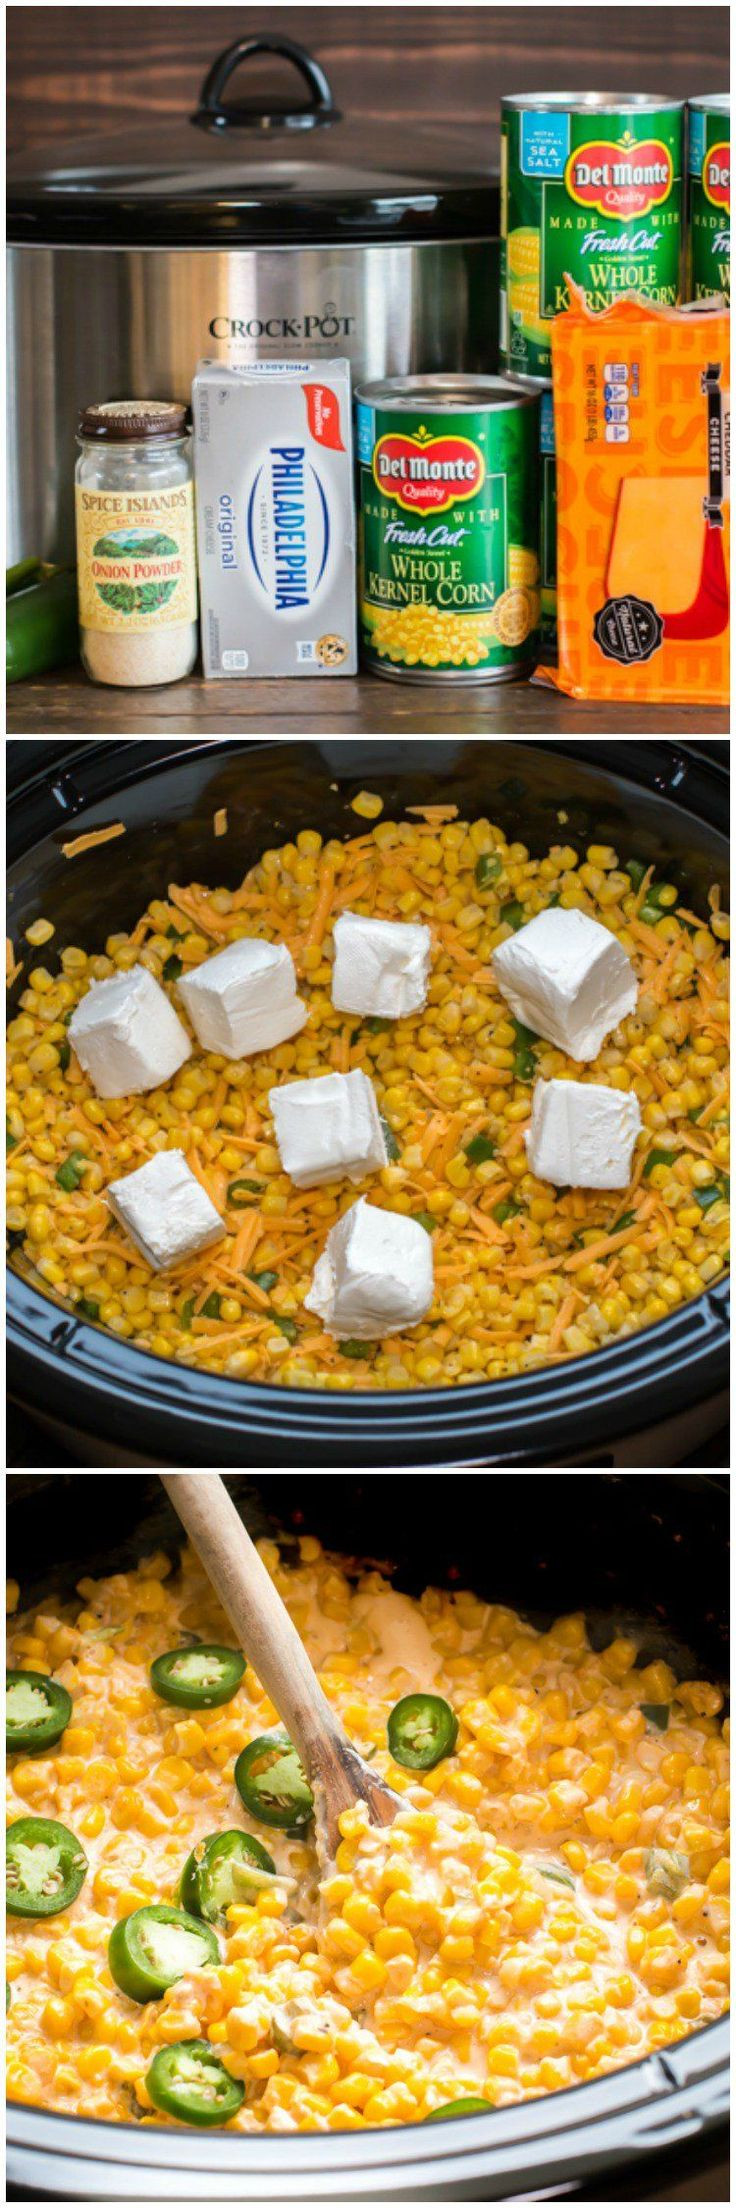 Crockpot Side Dishes For Potluck
 7497 best Crock Pot Potluck images on Pinterest